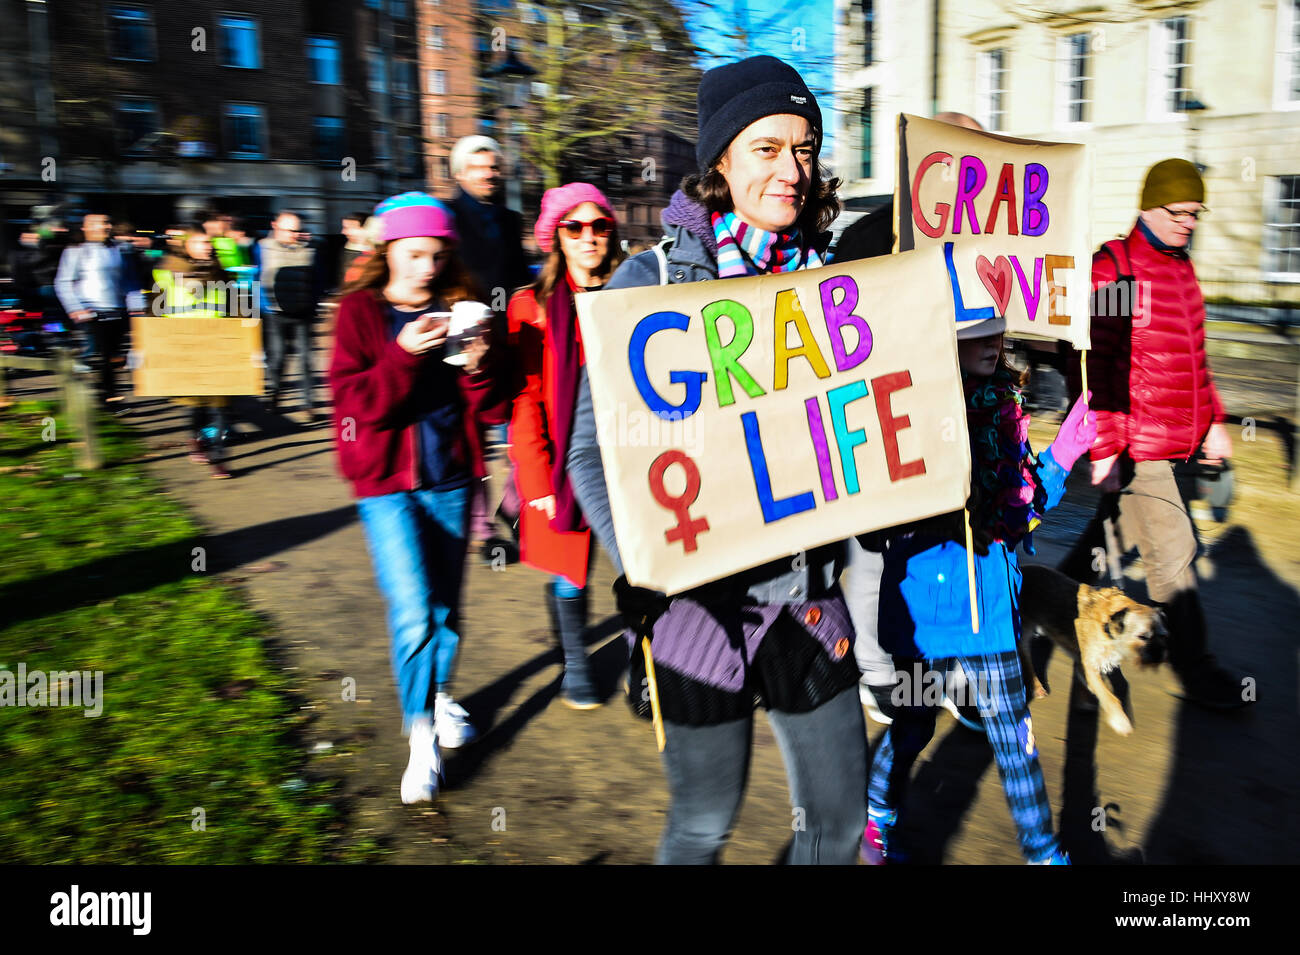 Les manifestants portent des pancartes à Bristol à une marche pour promouvoir les droits des femmes dans le sillage de l'élection américaine. Banque D'Images